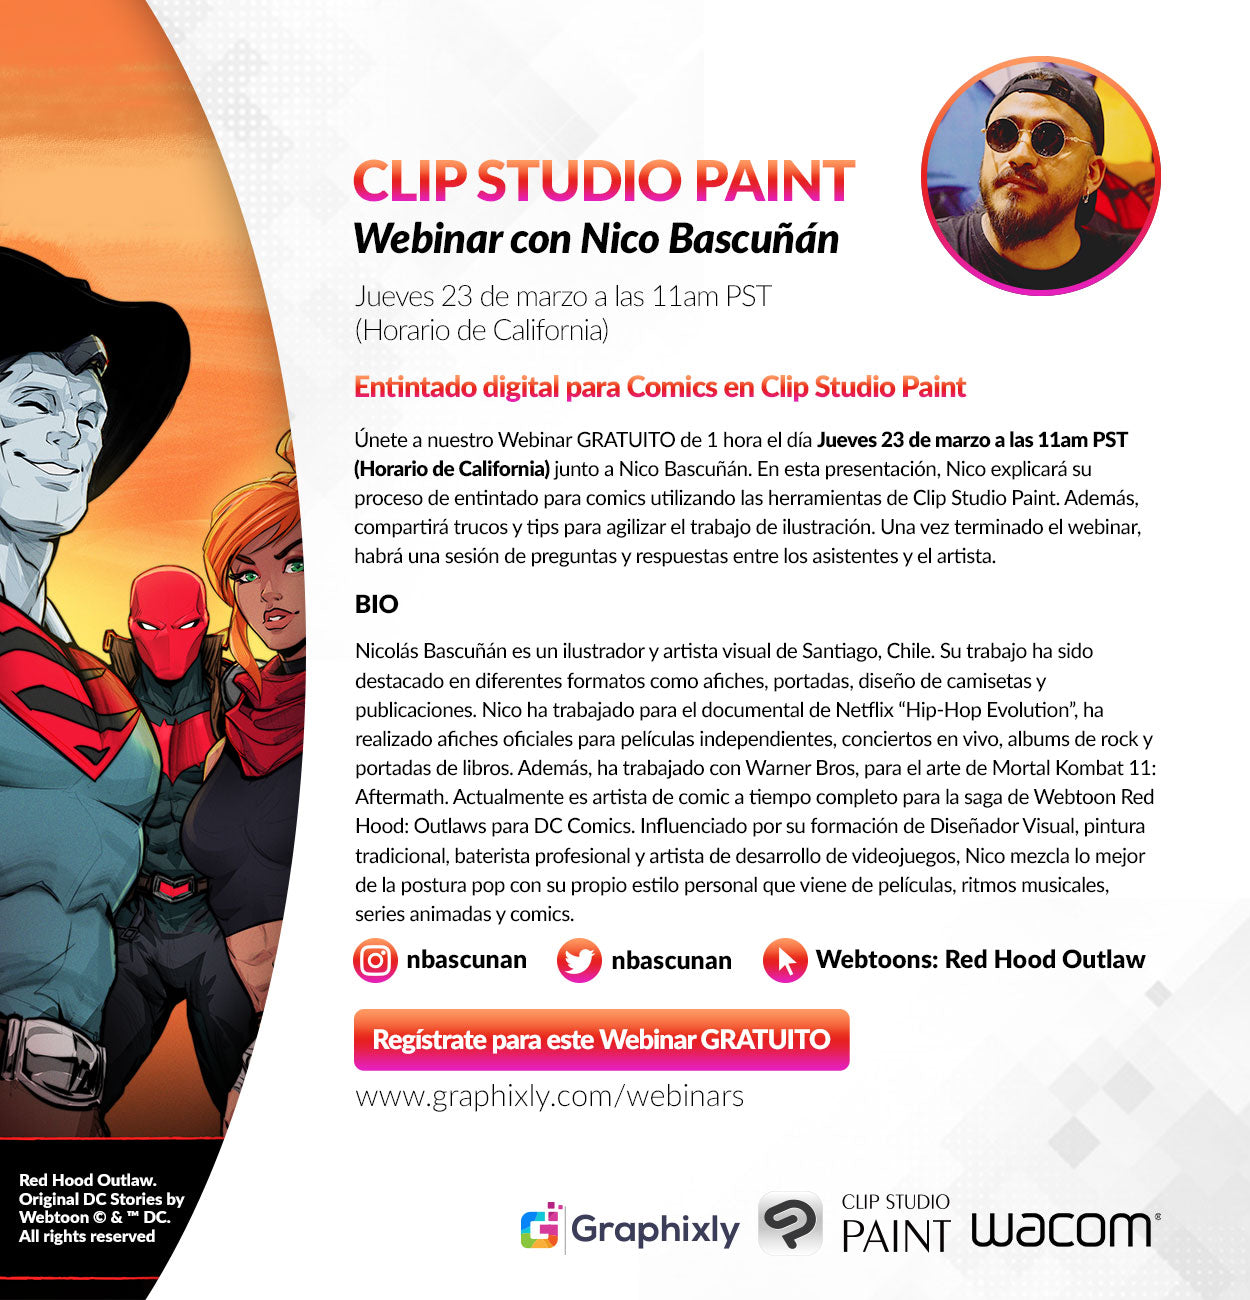 Webinar en español - Entintado digital para Comics en Clip Studio Paint con Nico Bascuñán